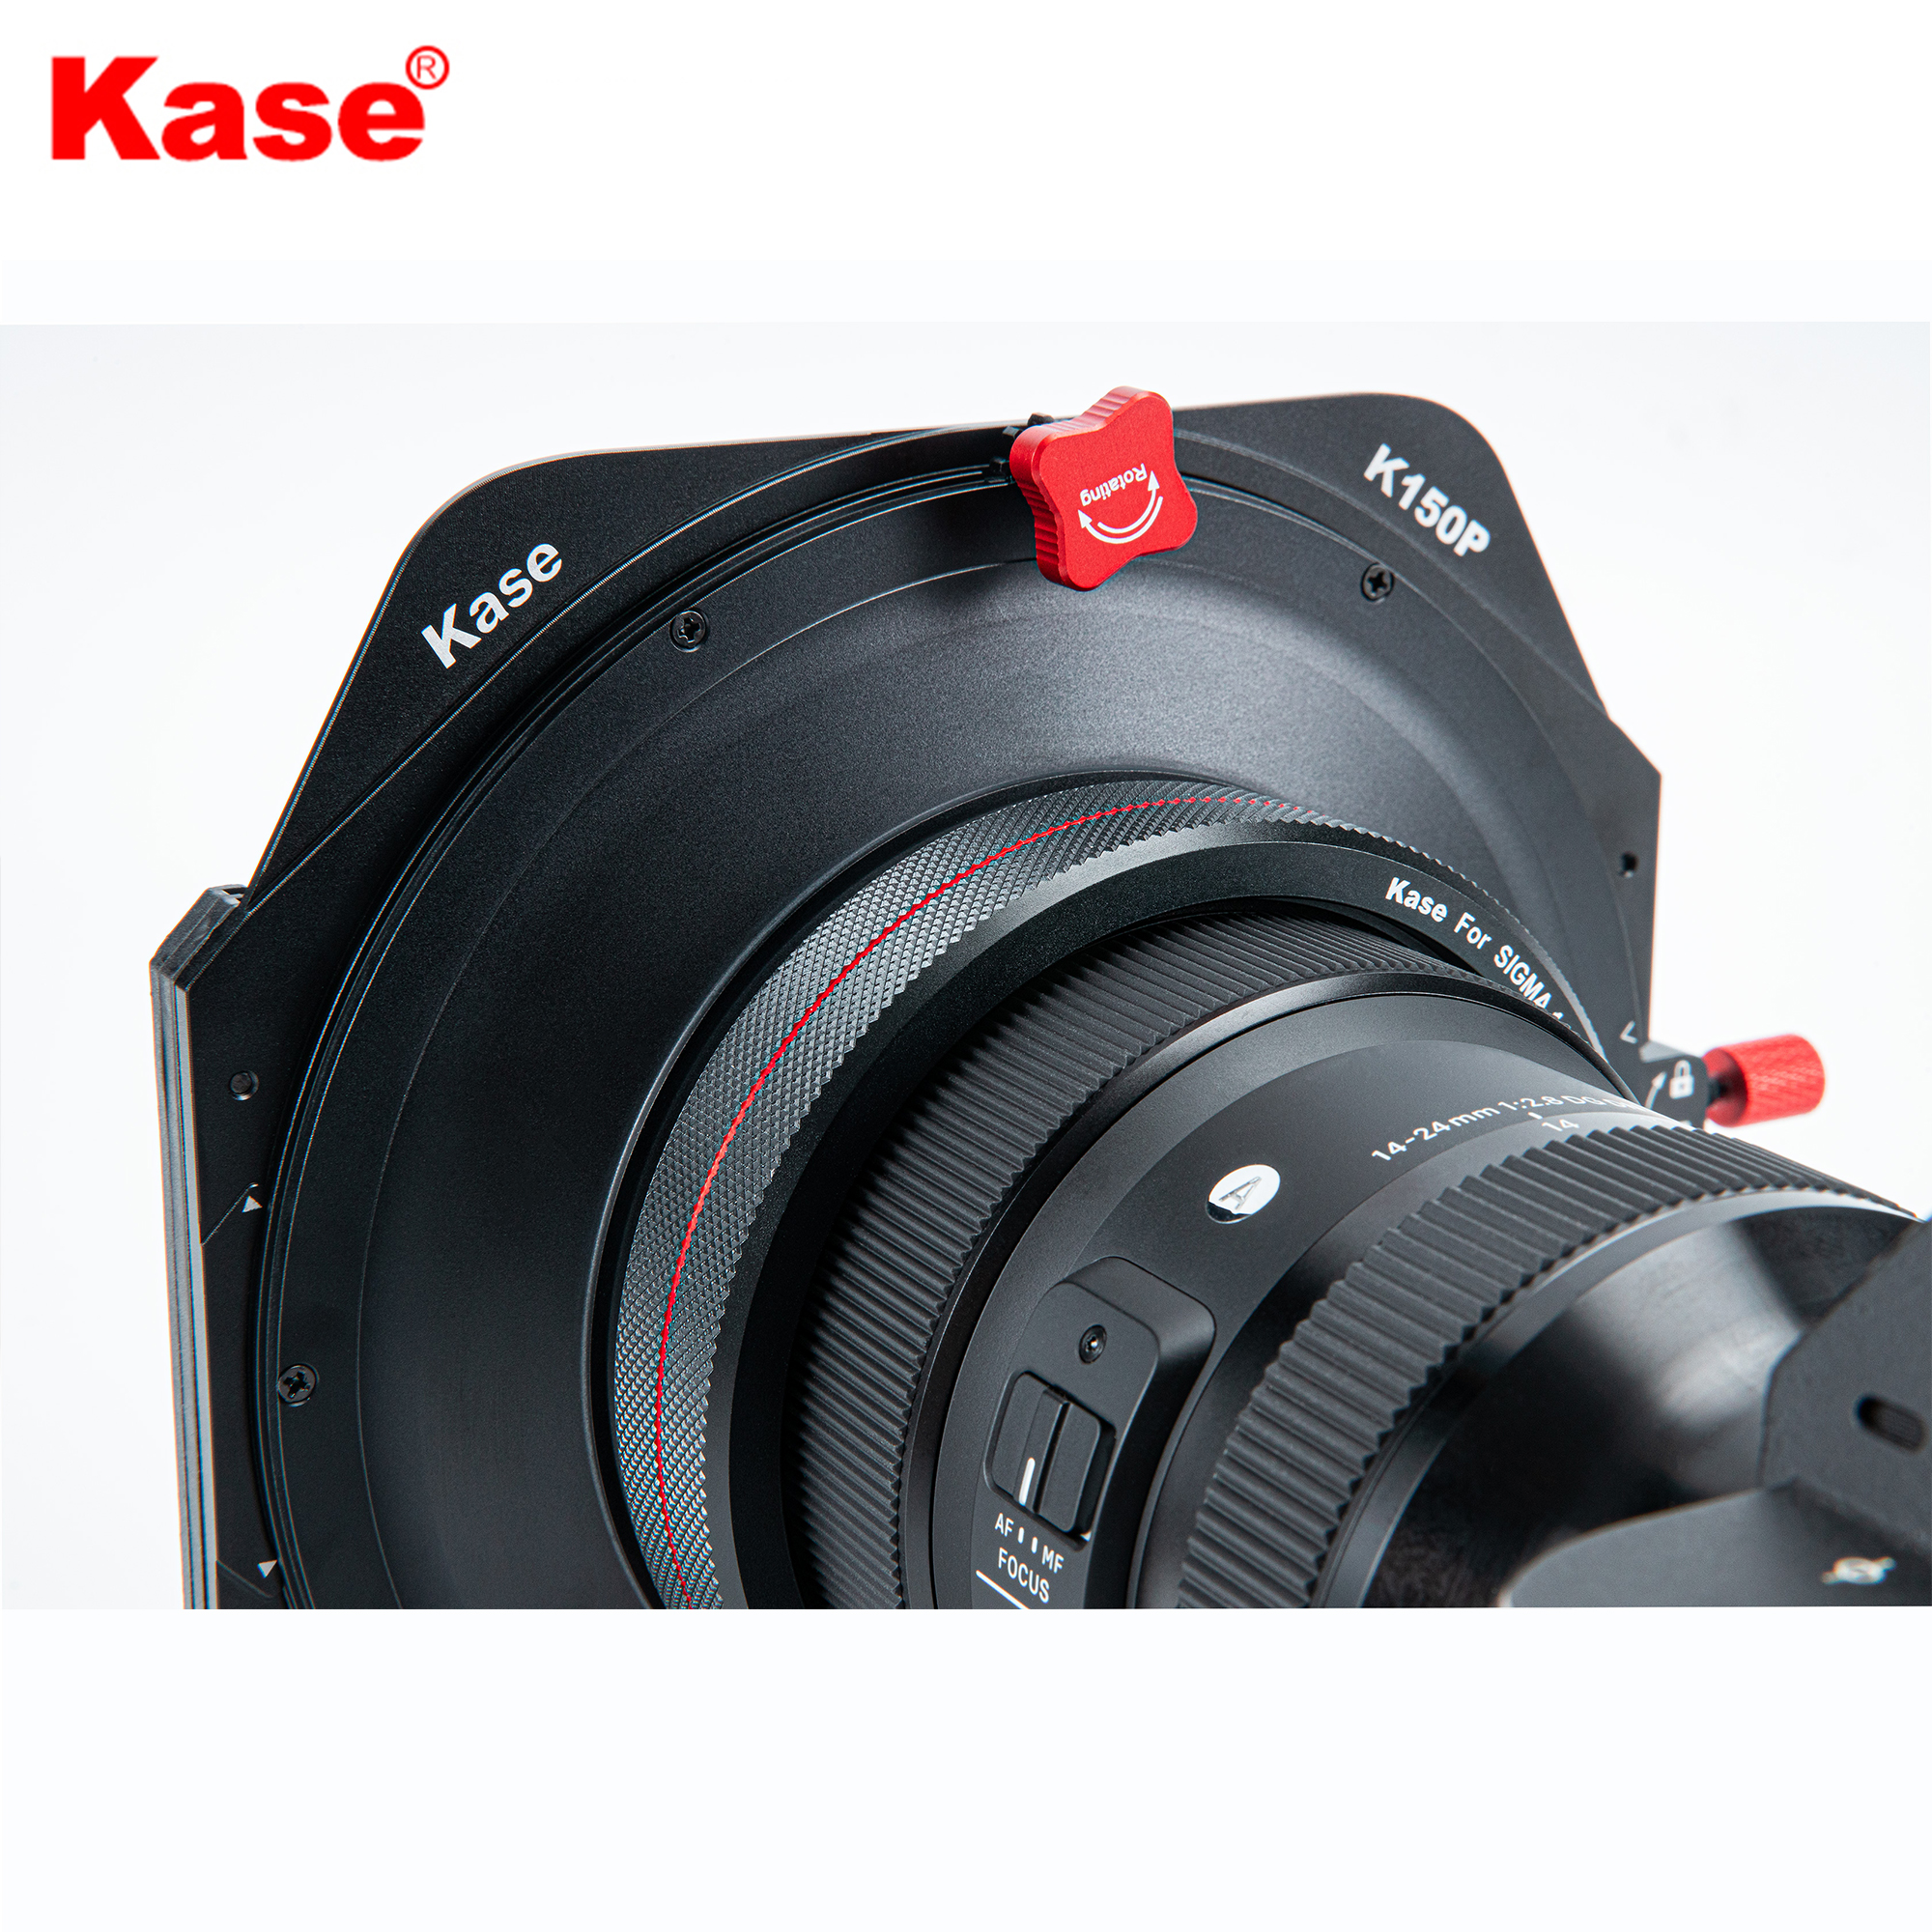 Kase K150P Filter Holder for Sigma14-24mm Lens(Sony)